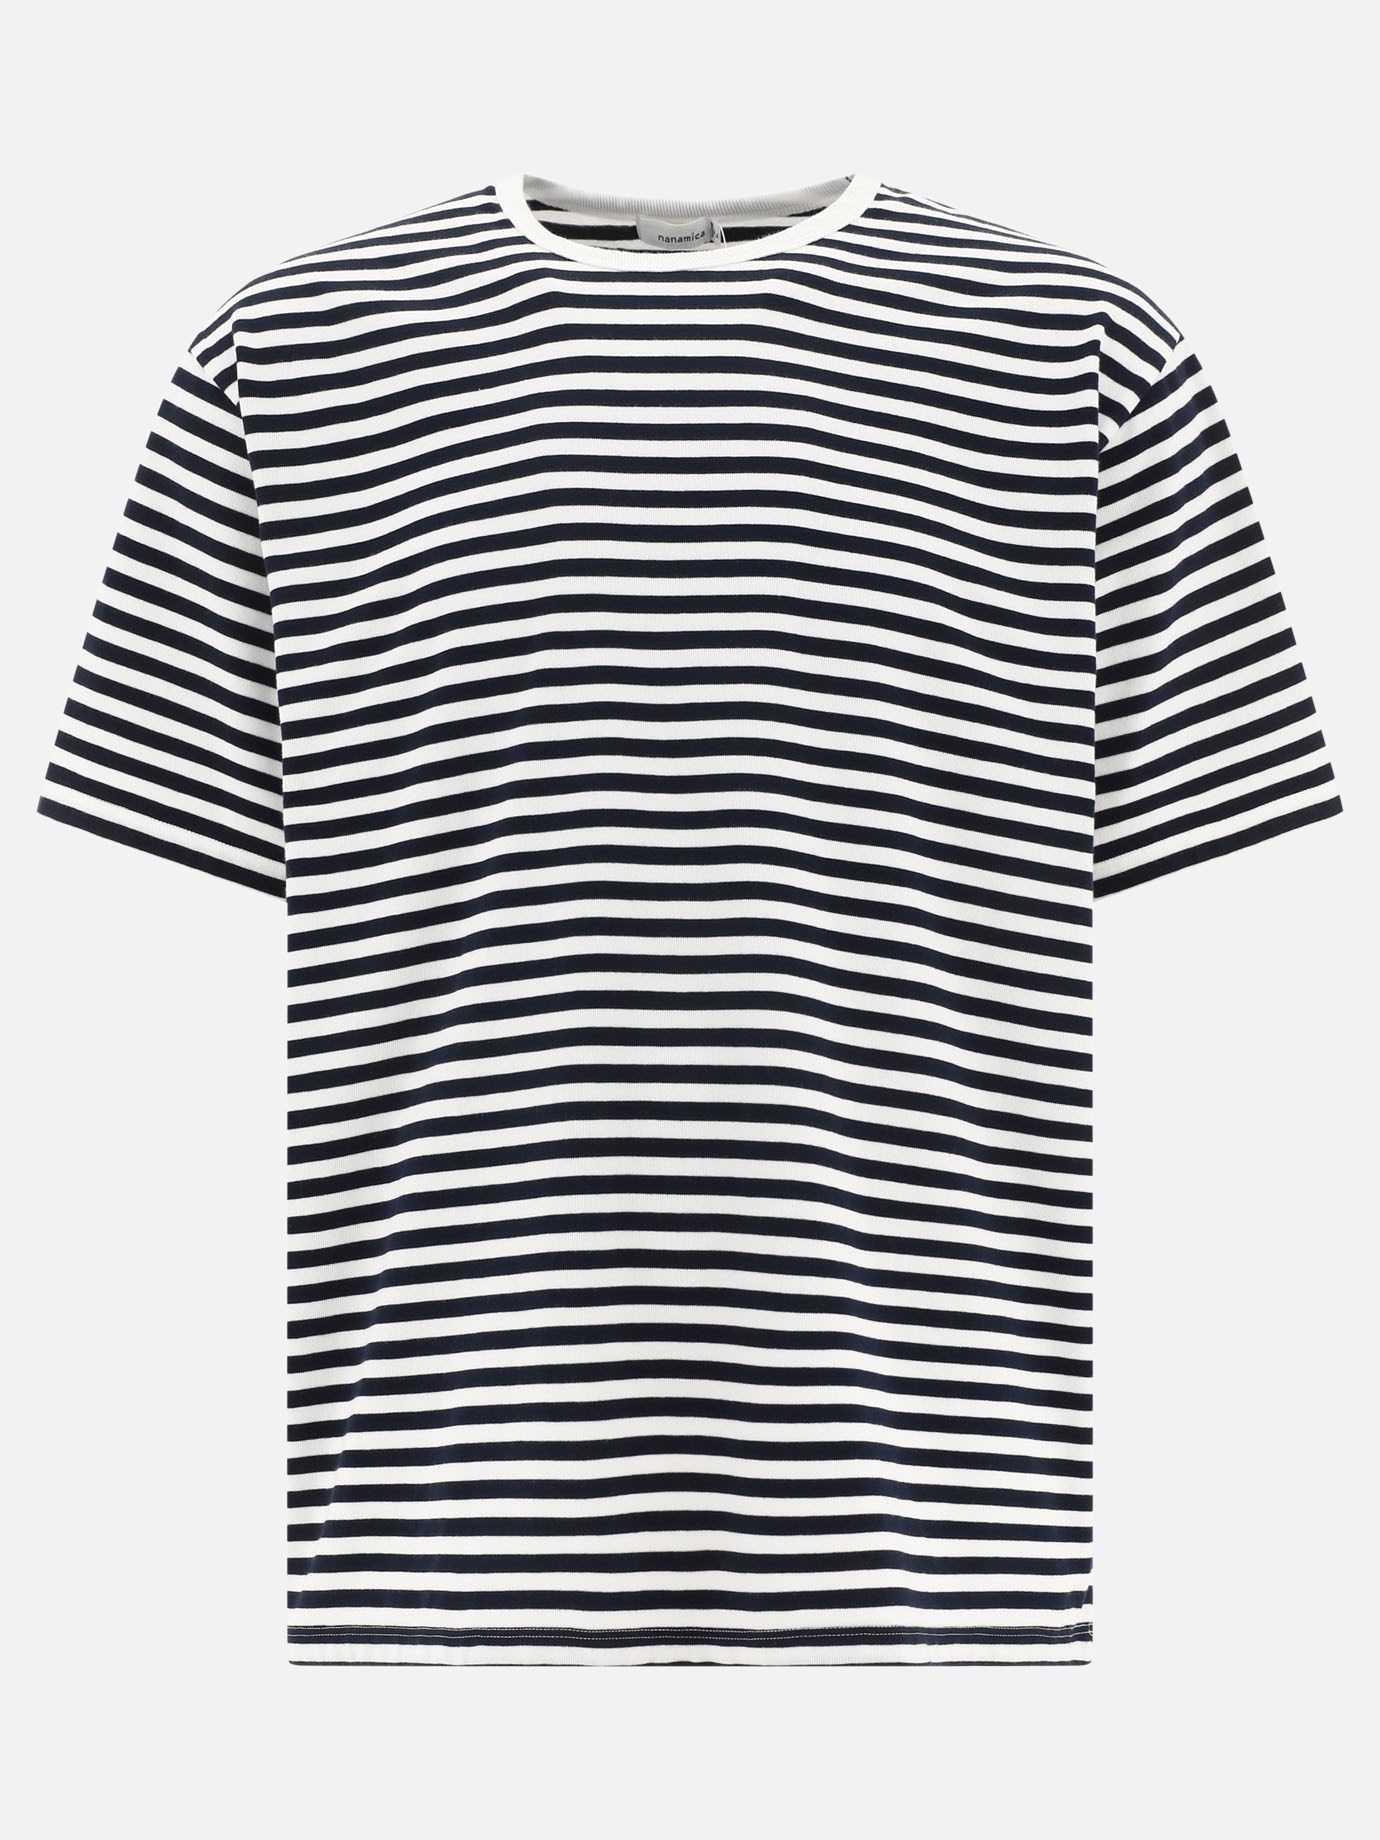  Coolmax  striped t-shirtby Nanamica - 0